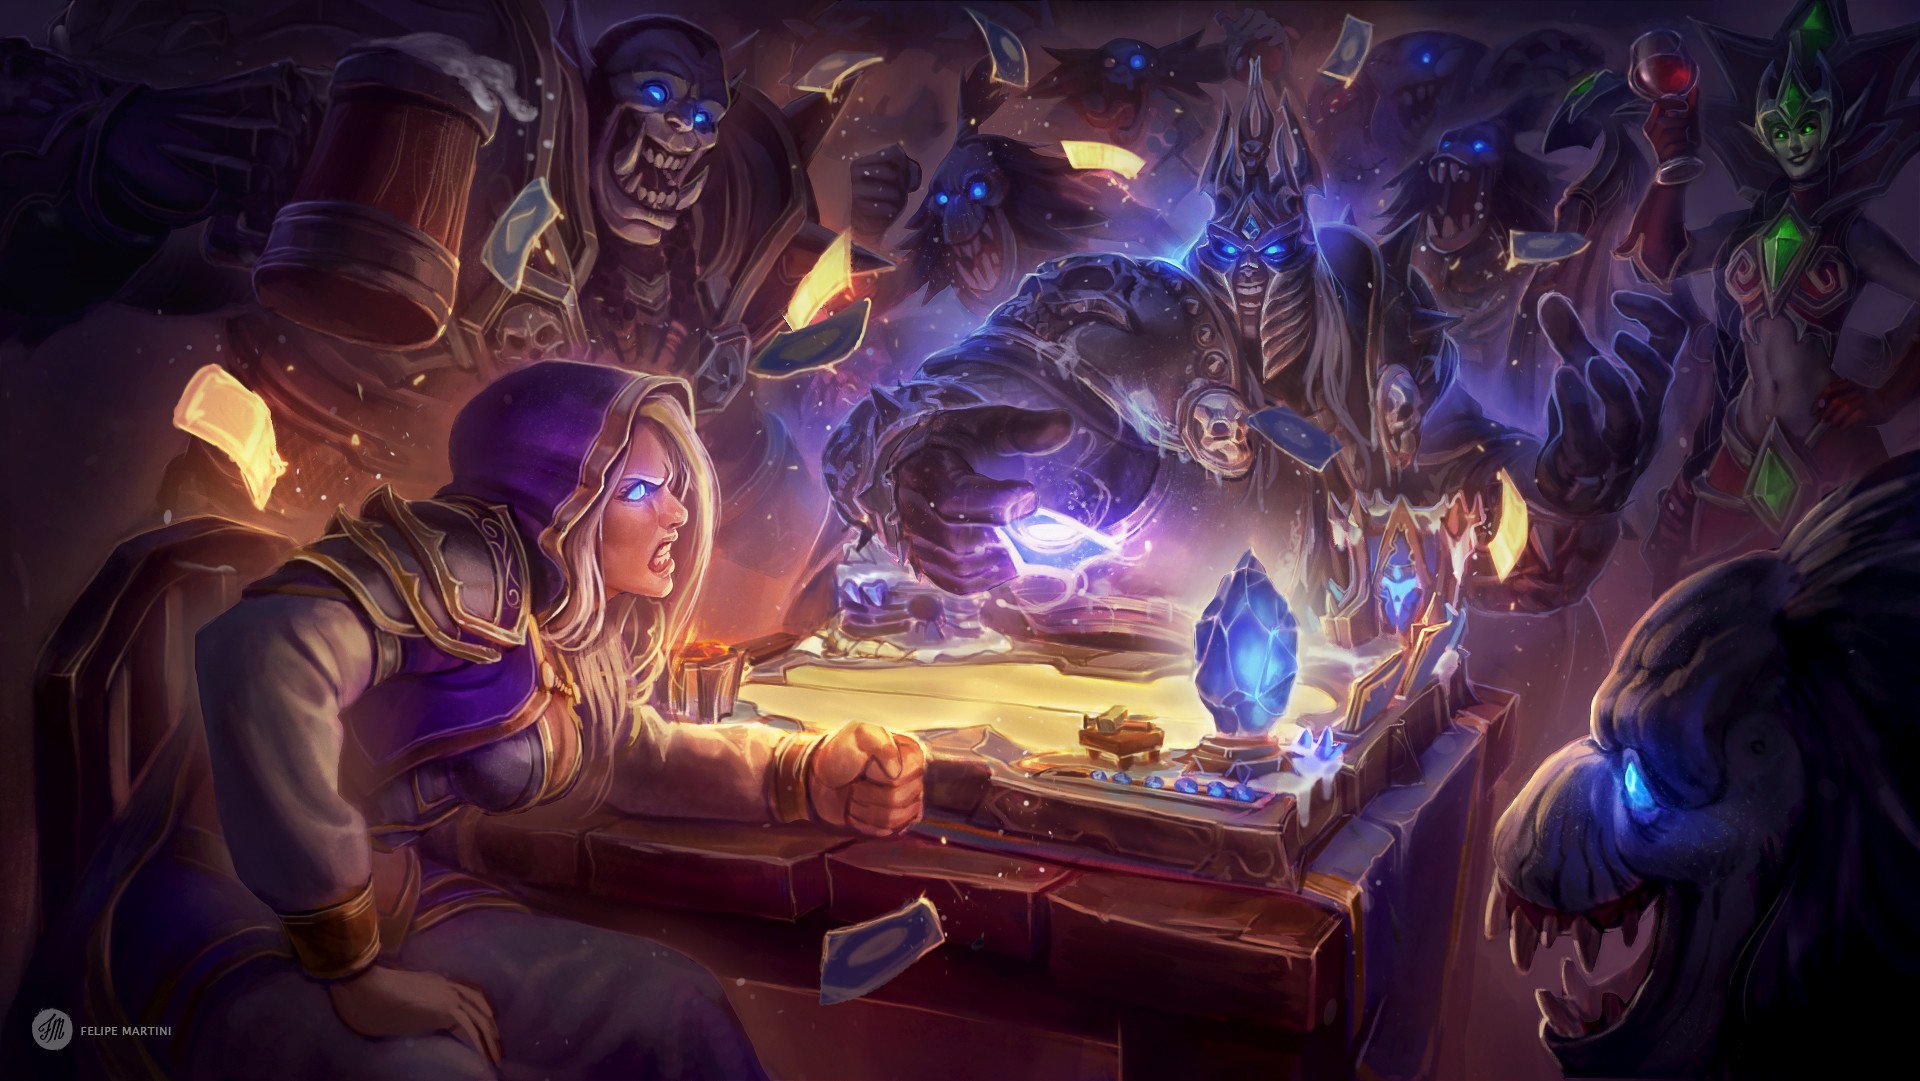 The Art of Warcraft on Twitter: Tavern Brawl Fan Art Drawn By 🖊 [ Felipe Martini ] dessiné par нарисовано Dibujado por Artist Profile : https://t.co/N6gYpDY4Z1 #warcraft #gameArt #blizzard #